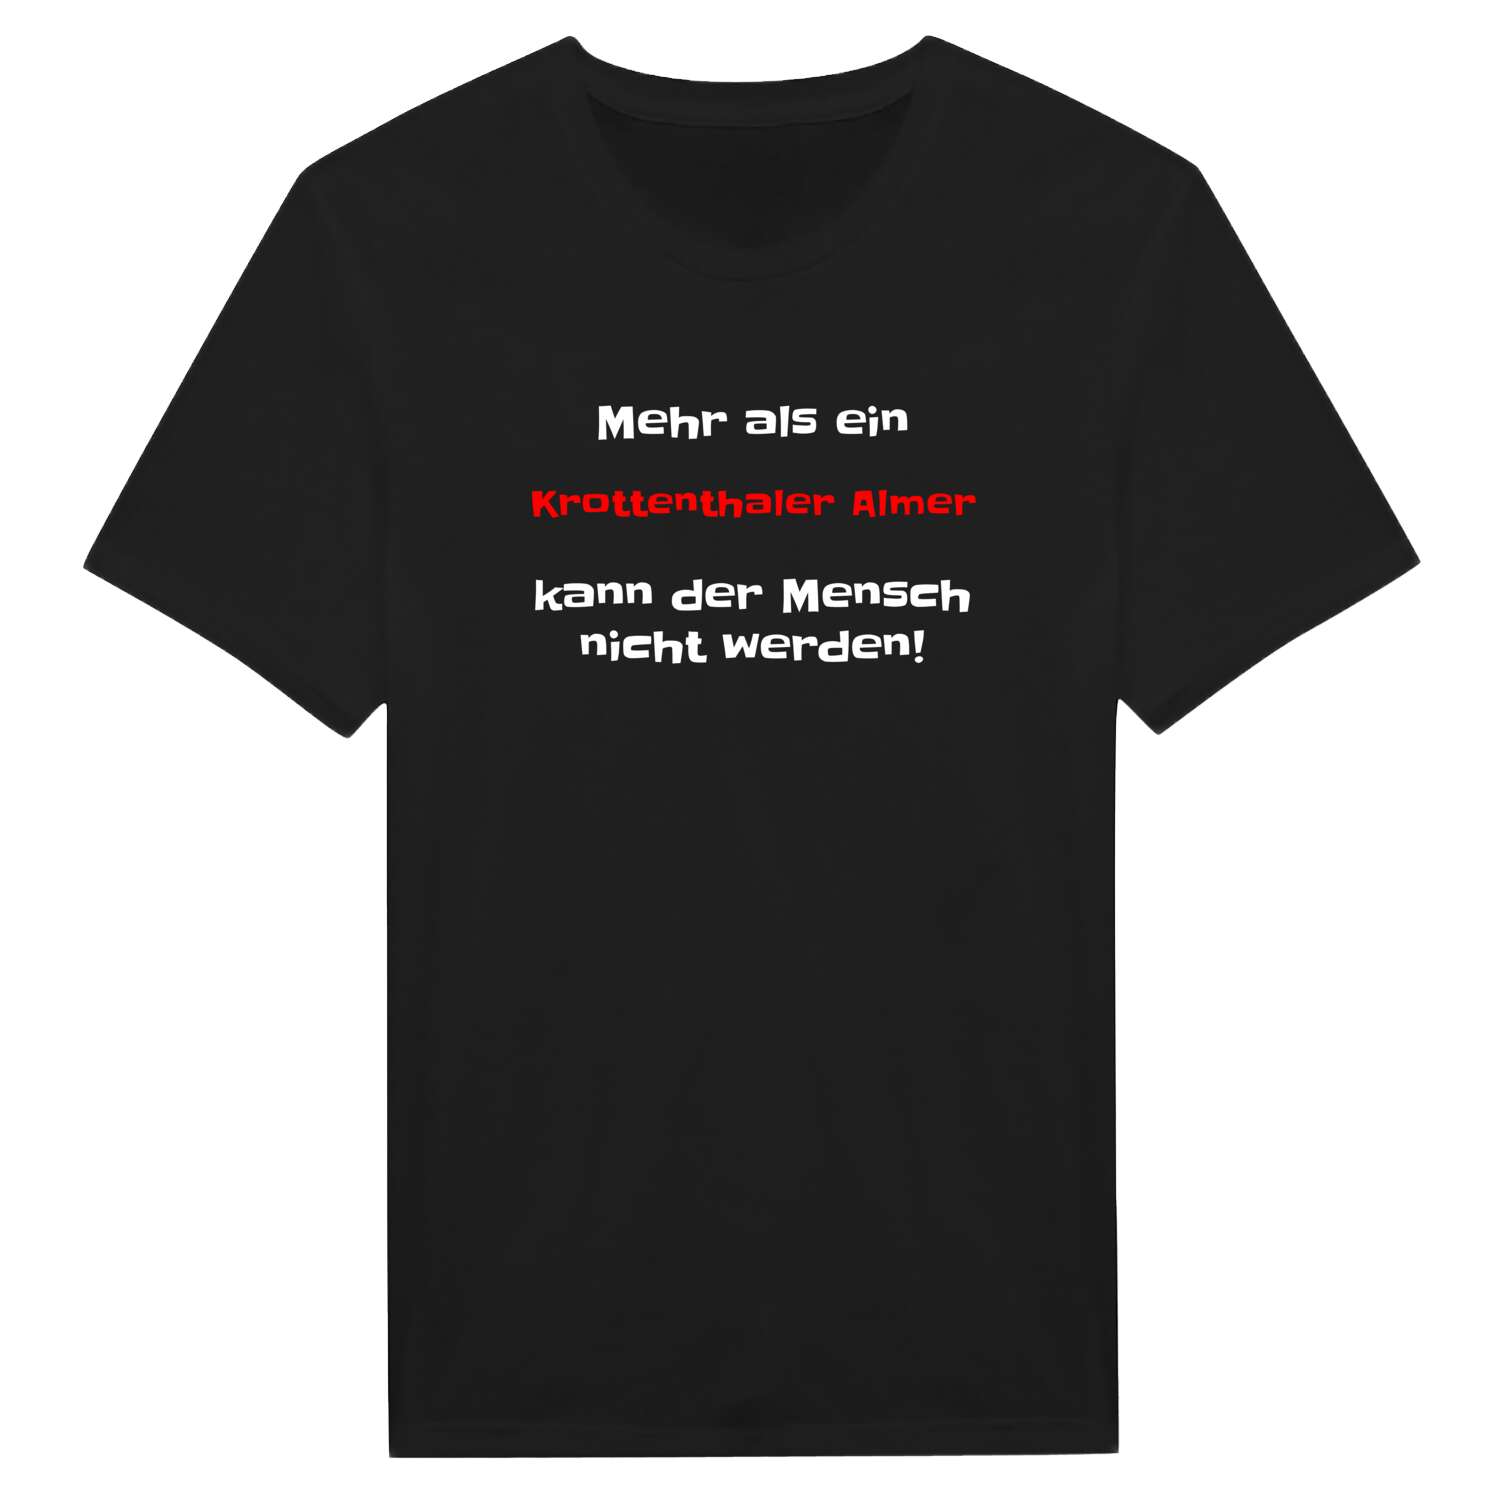 Krottenthaler Alm T-Shirt »Mehr als ein«